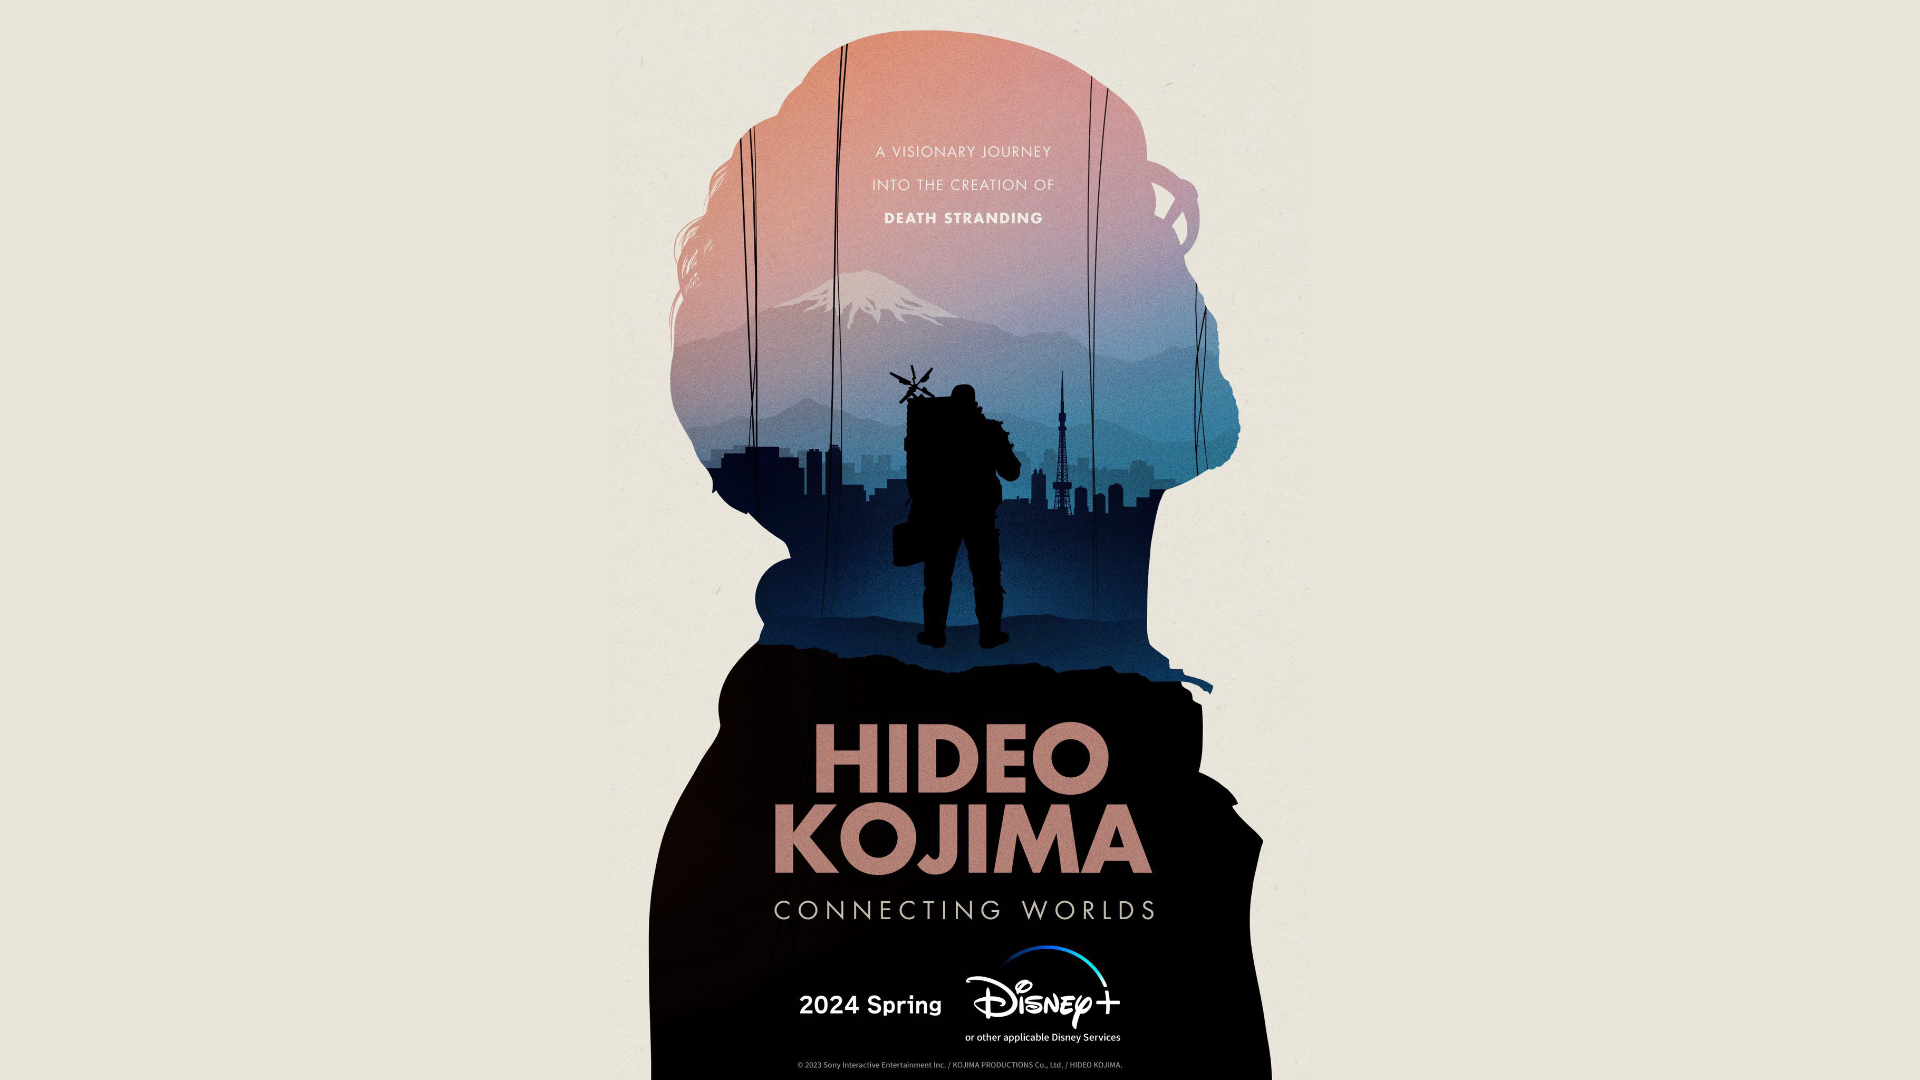 Hideo Kojima Studio Will Make Films in the Future